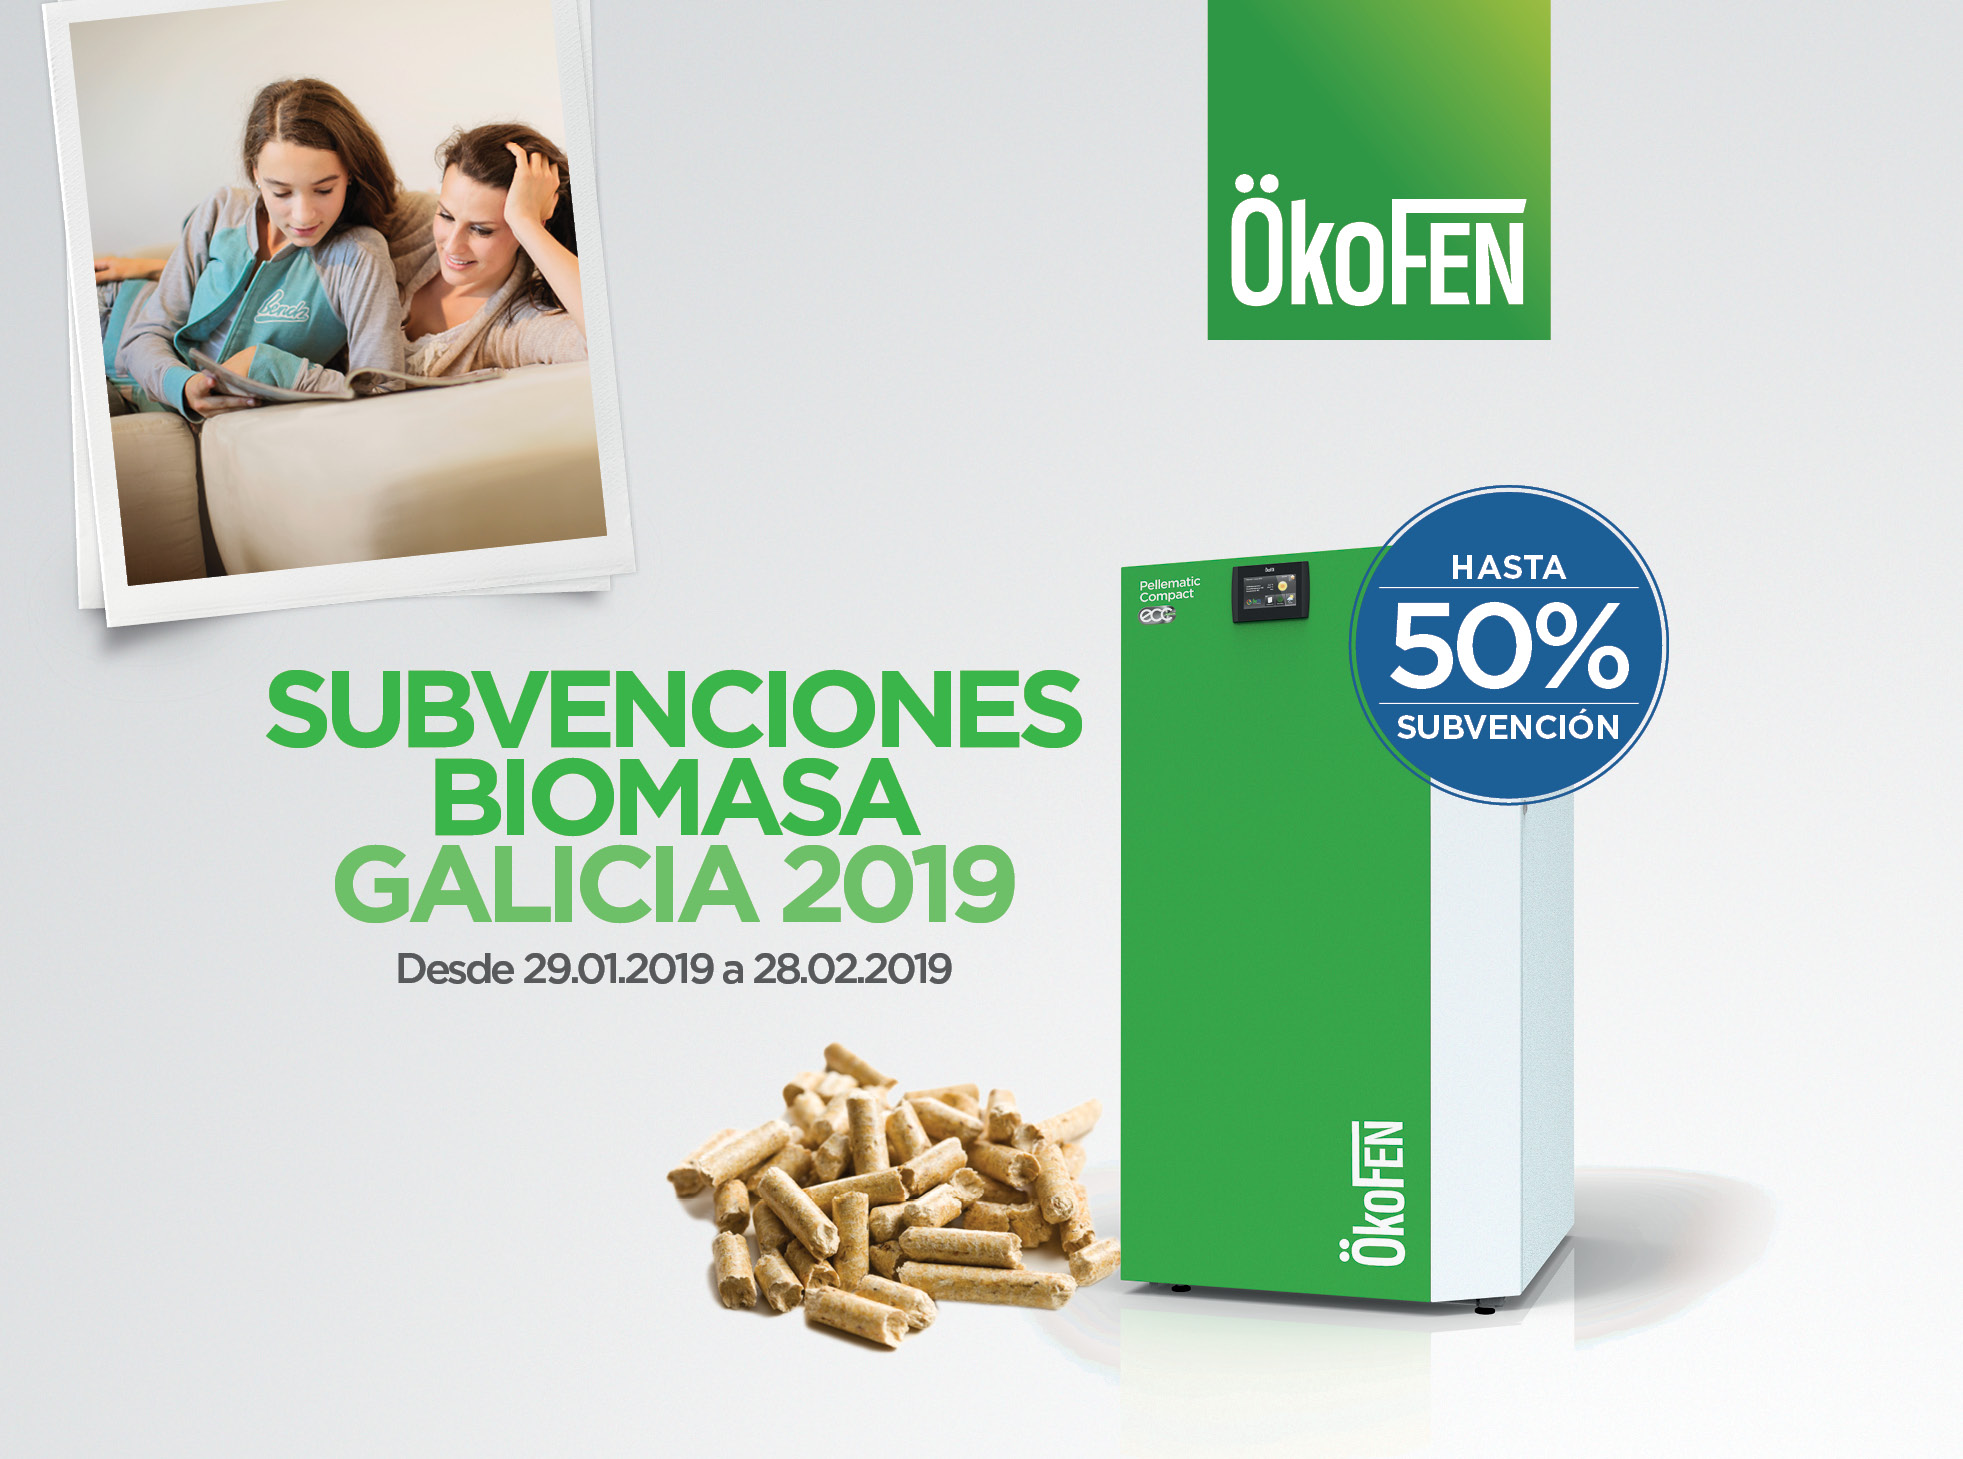 Subvenciones biomasa Galicia 2019